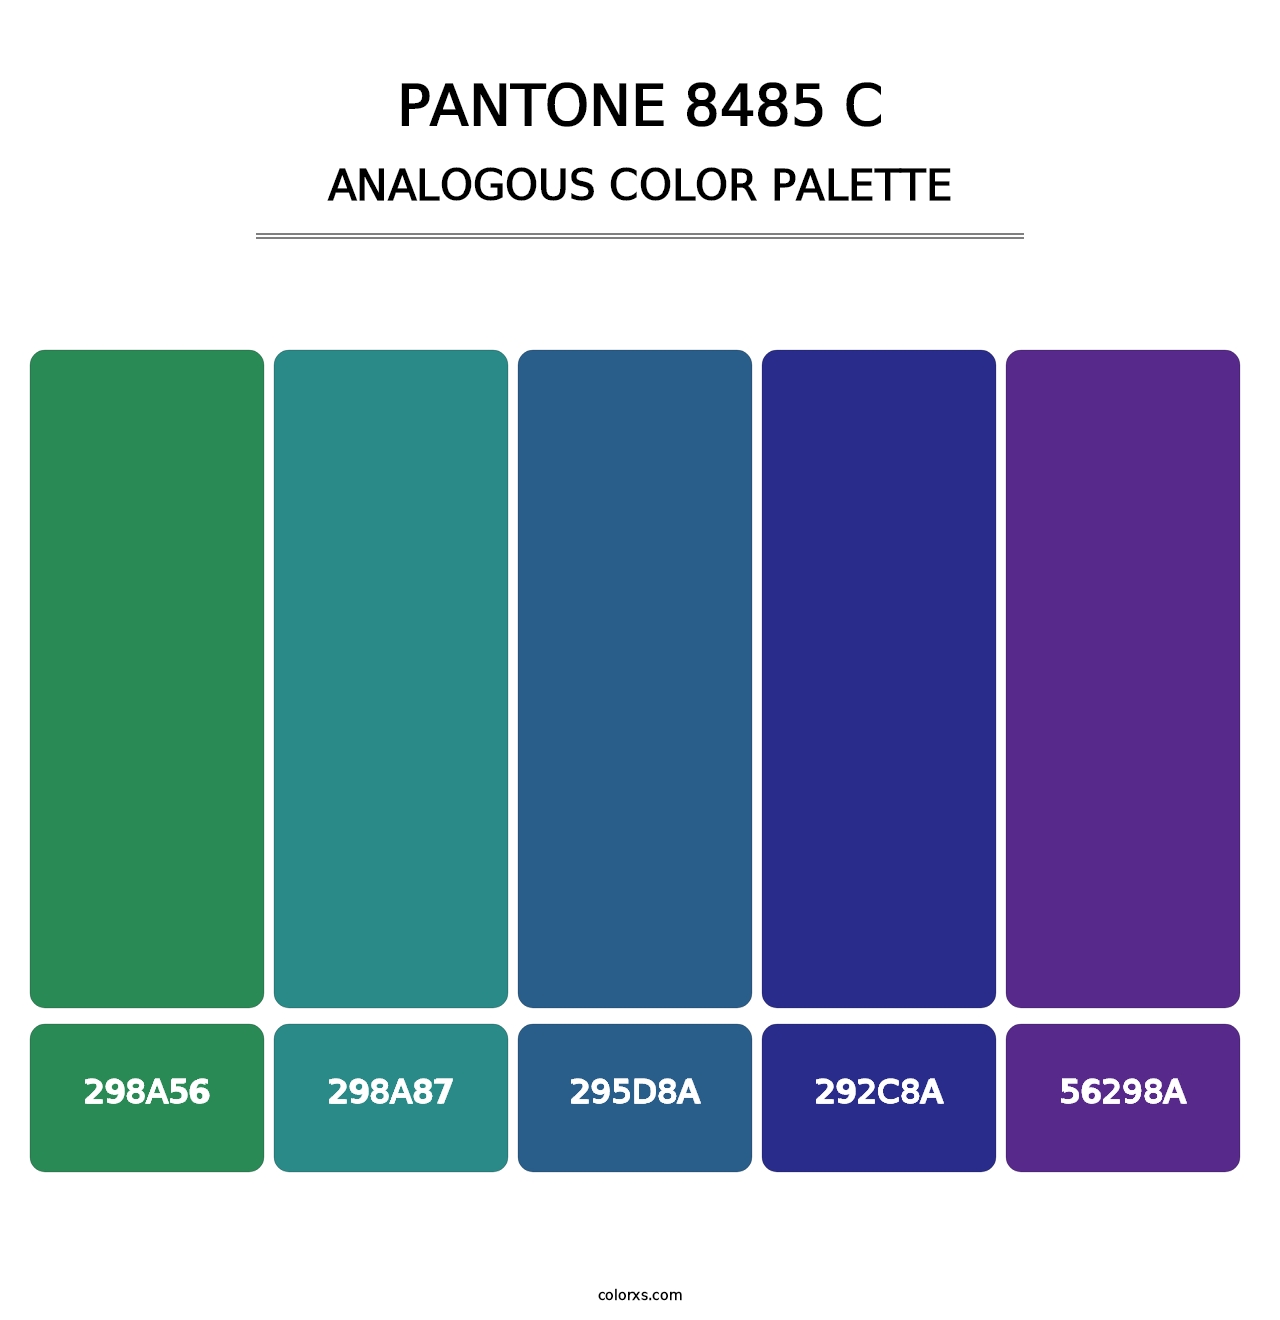 PANTONE 8485 C - Analogous Color Palette